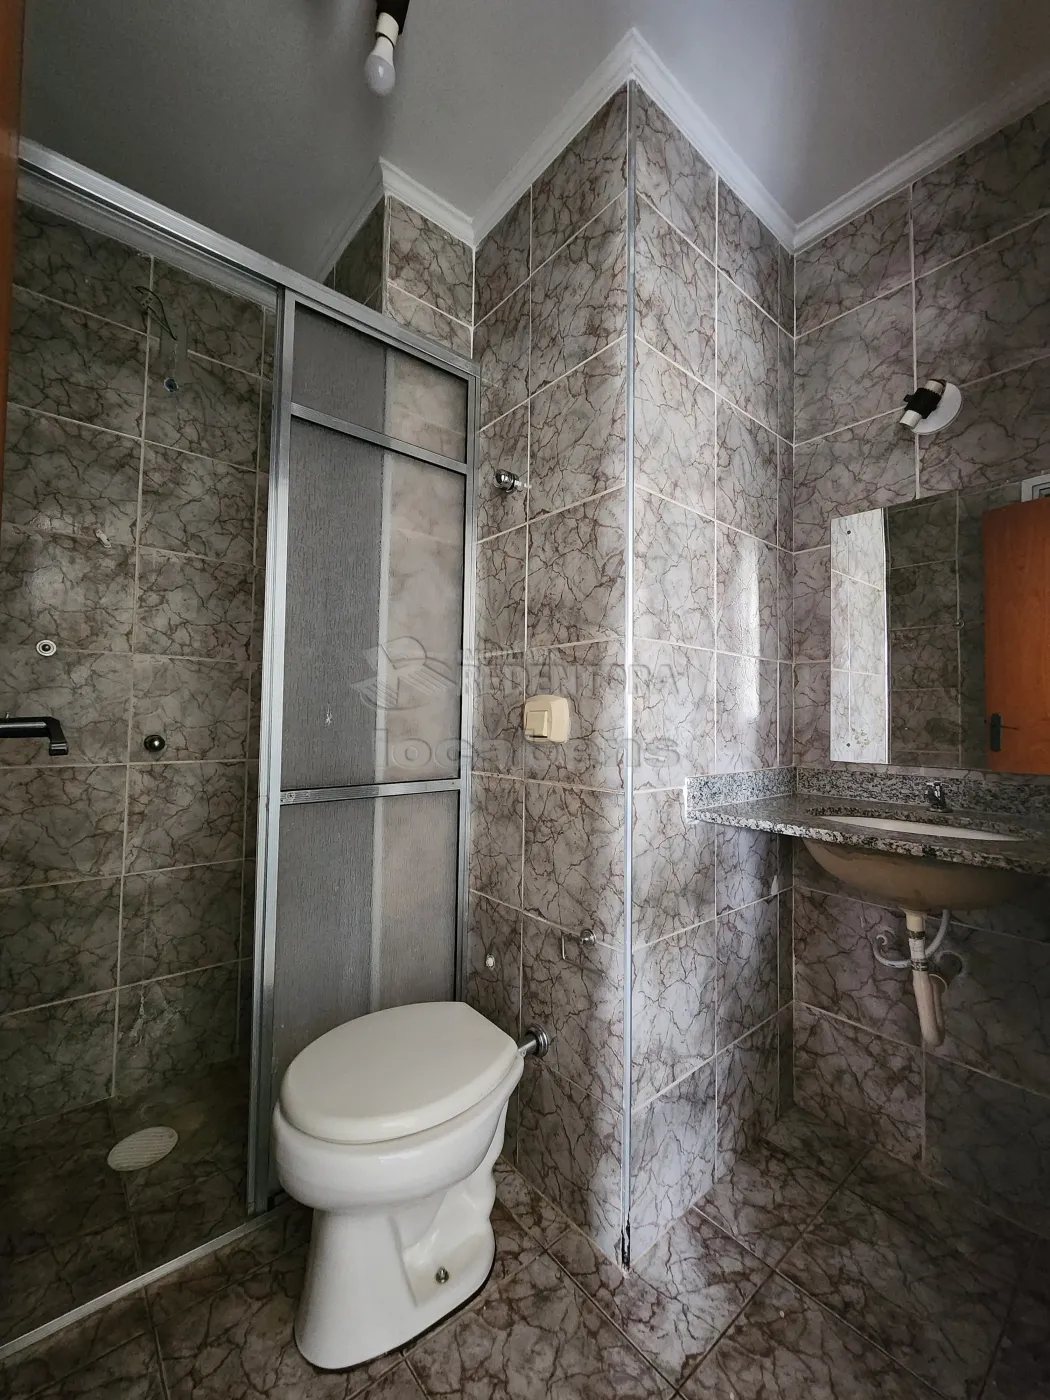 Alugar Apartamento / Padrão em São José do Rio Preto apenas R$ 800,00 - Foto 10